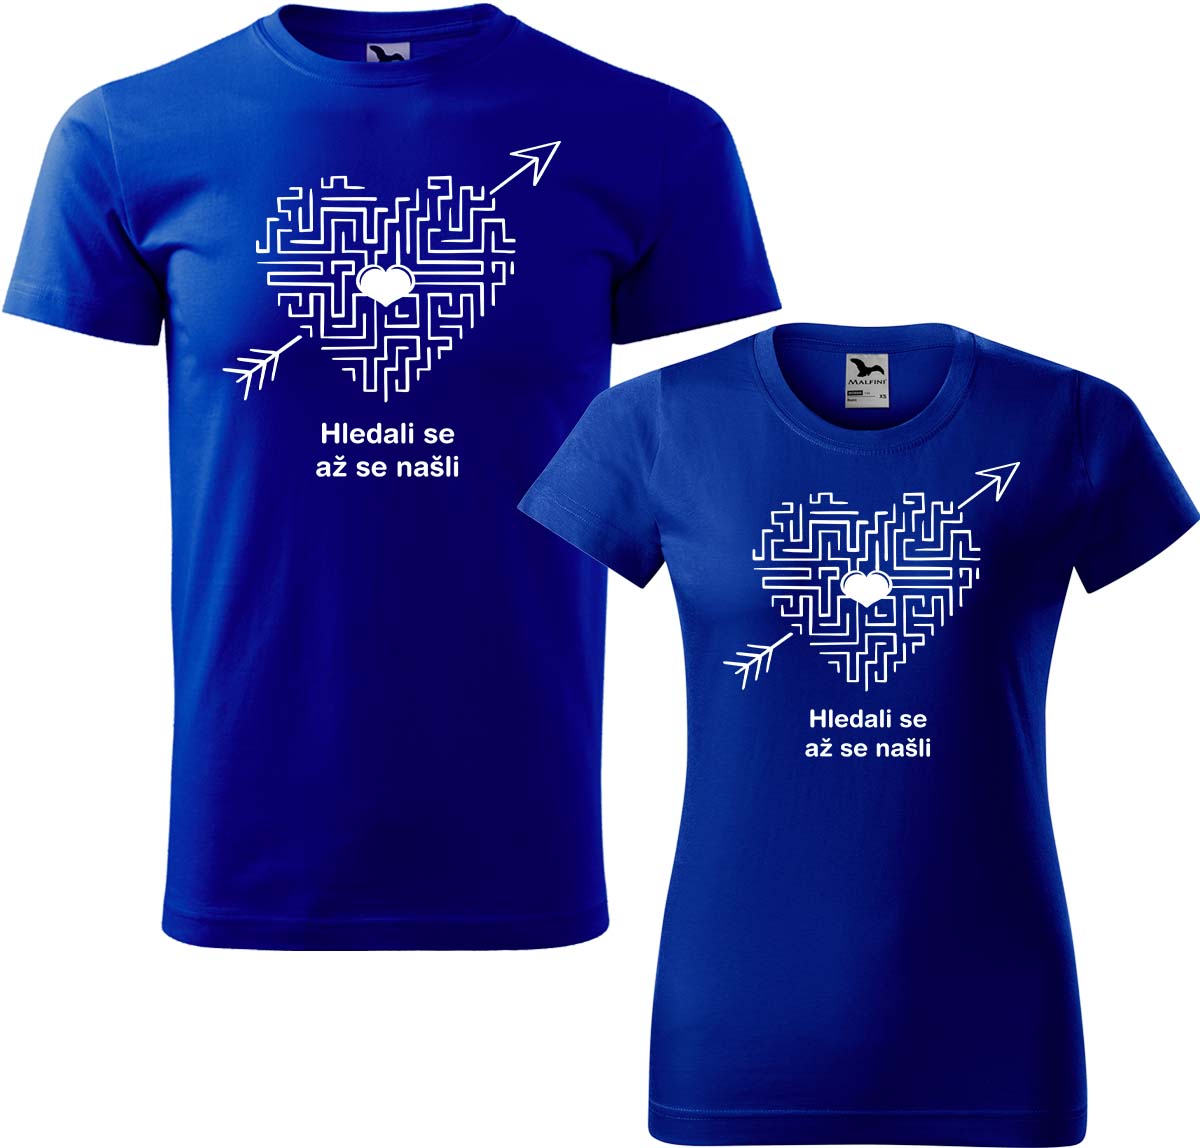 Trička pro páry - Hledali se, až se našli (srdce) Barva: Královská modrá (05), Velikost dámské tričko: 3XL, Velikost pánské tričko: 3XL